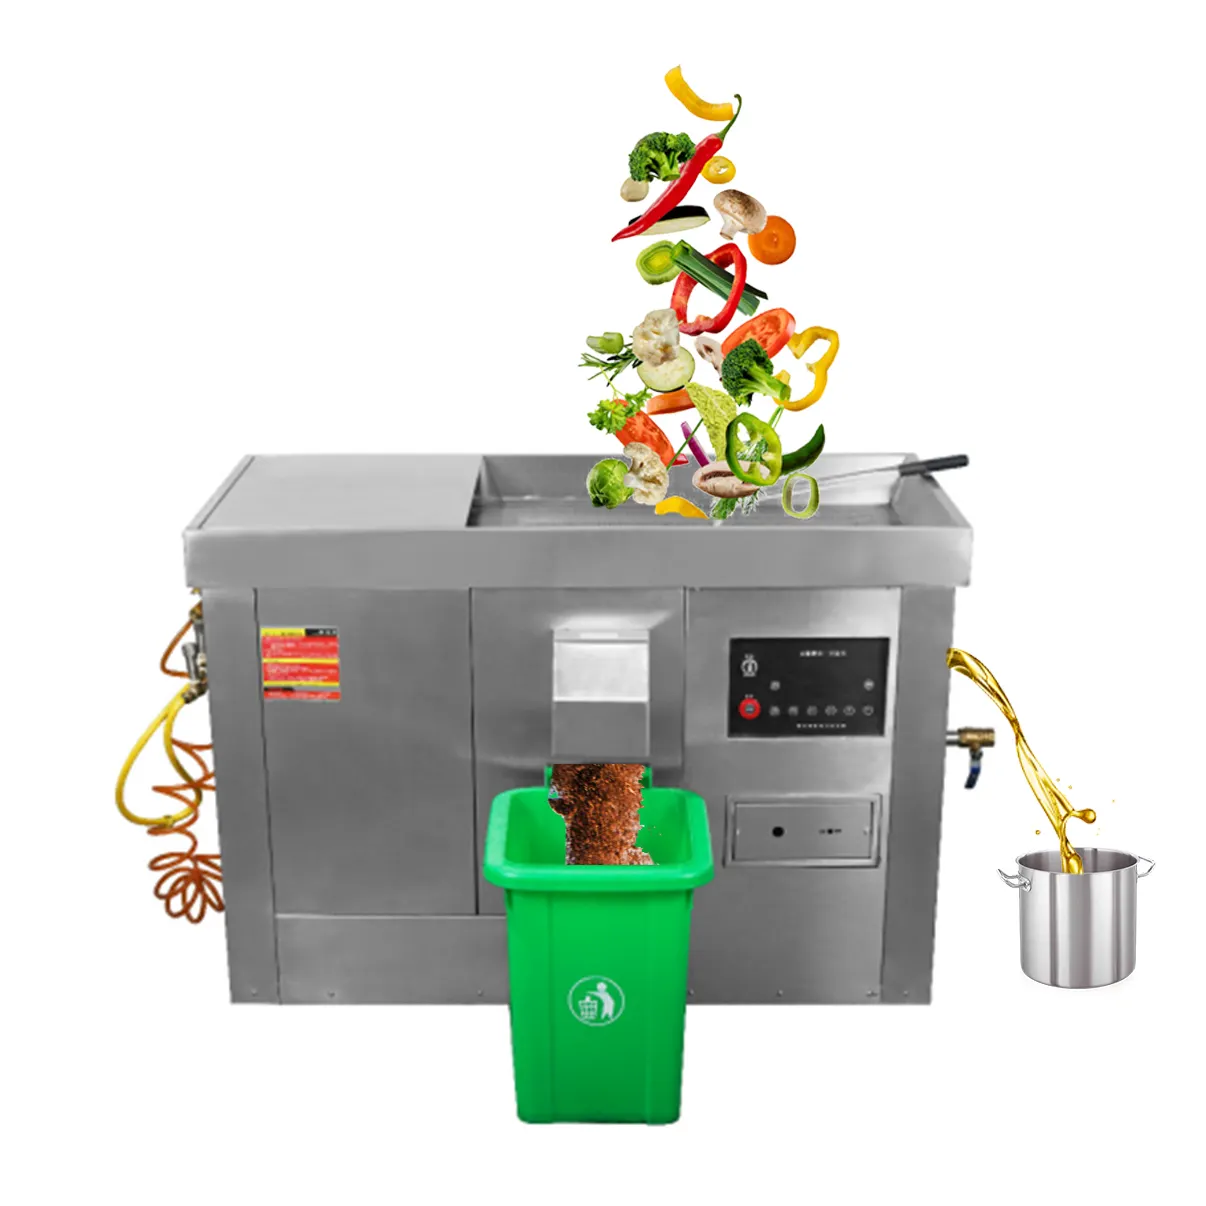 Gewerbliche Küche Lebensmittel abfälle Öl-Wasser-Trennung Müll entsorger Maschine Lebensmittel abfälle Dehydrat isierung Lebensmittel abfälle Recycling mach